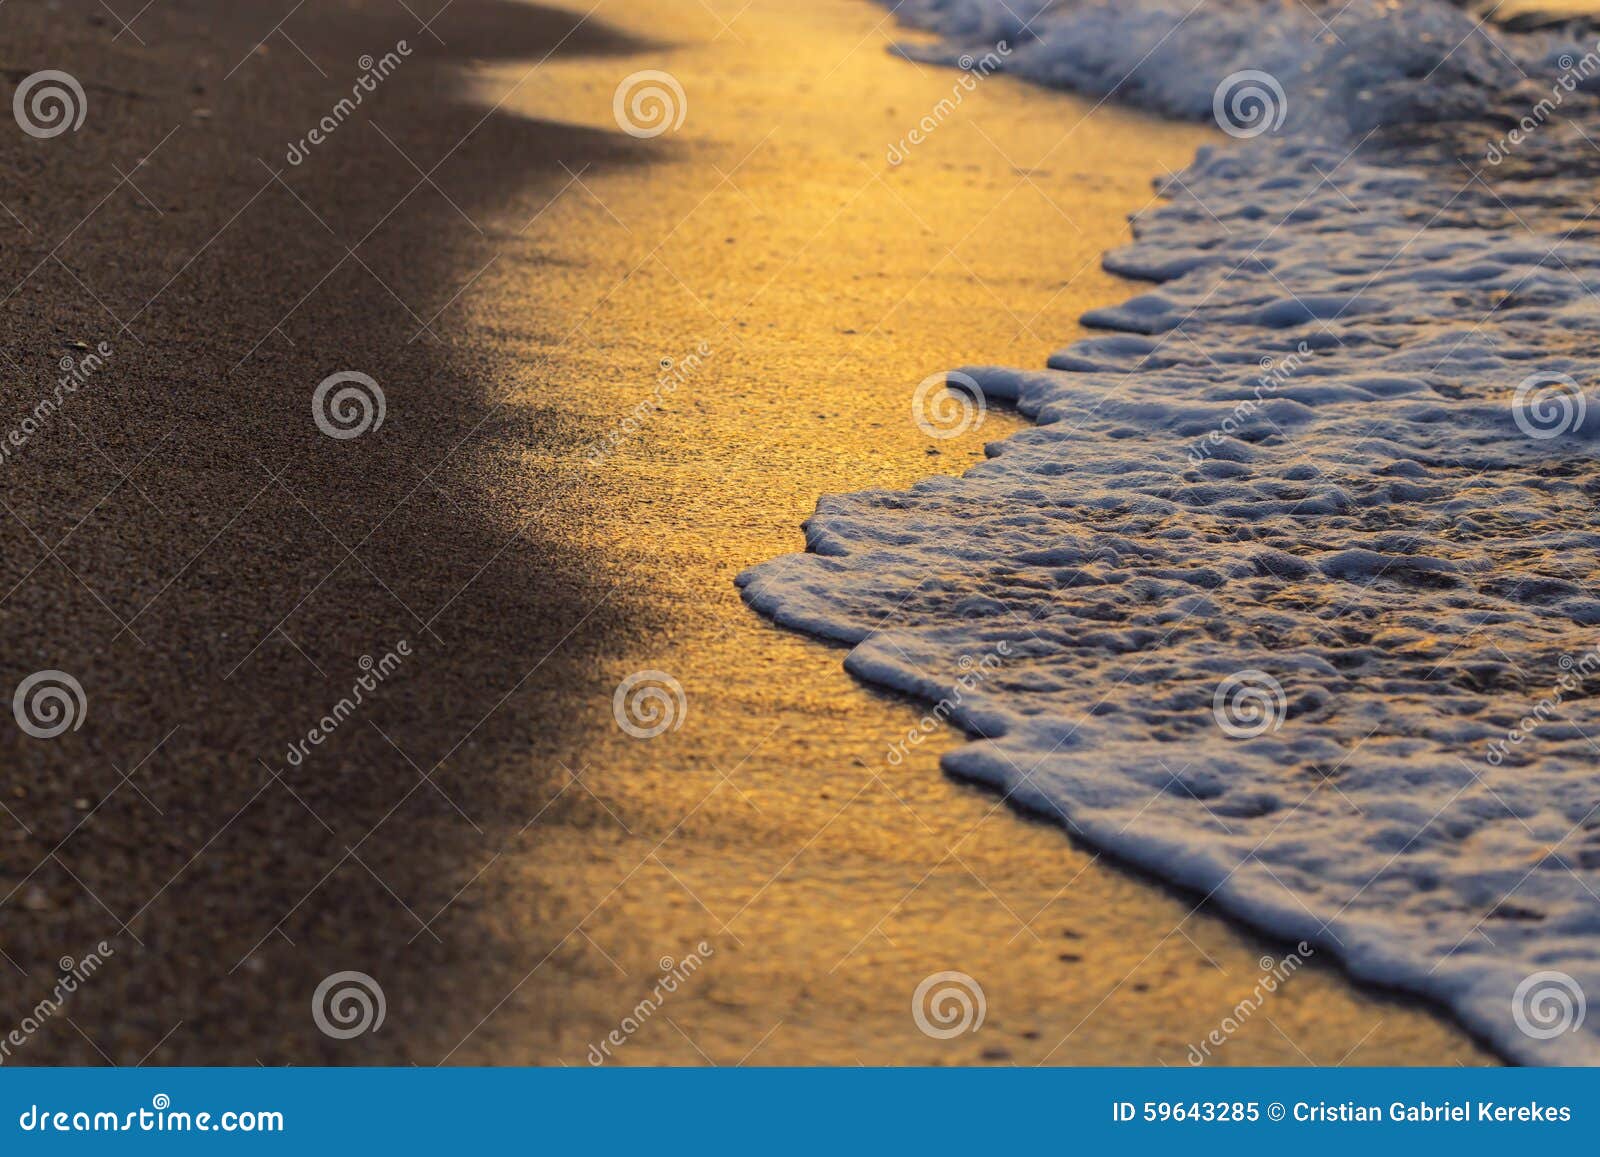 Miękkiej części fala na plaży przy zmierzchem tworzy złotych kolory. Macha na plaży przy zmierzchem tworzy złotych kolory